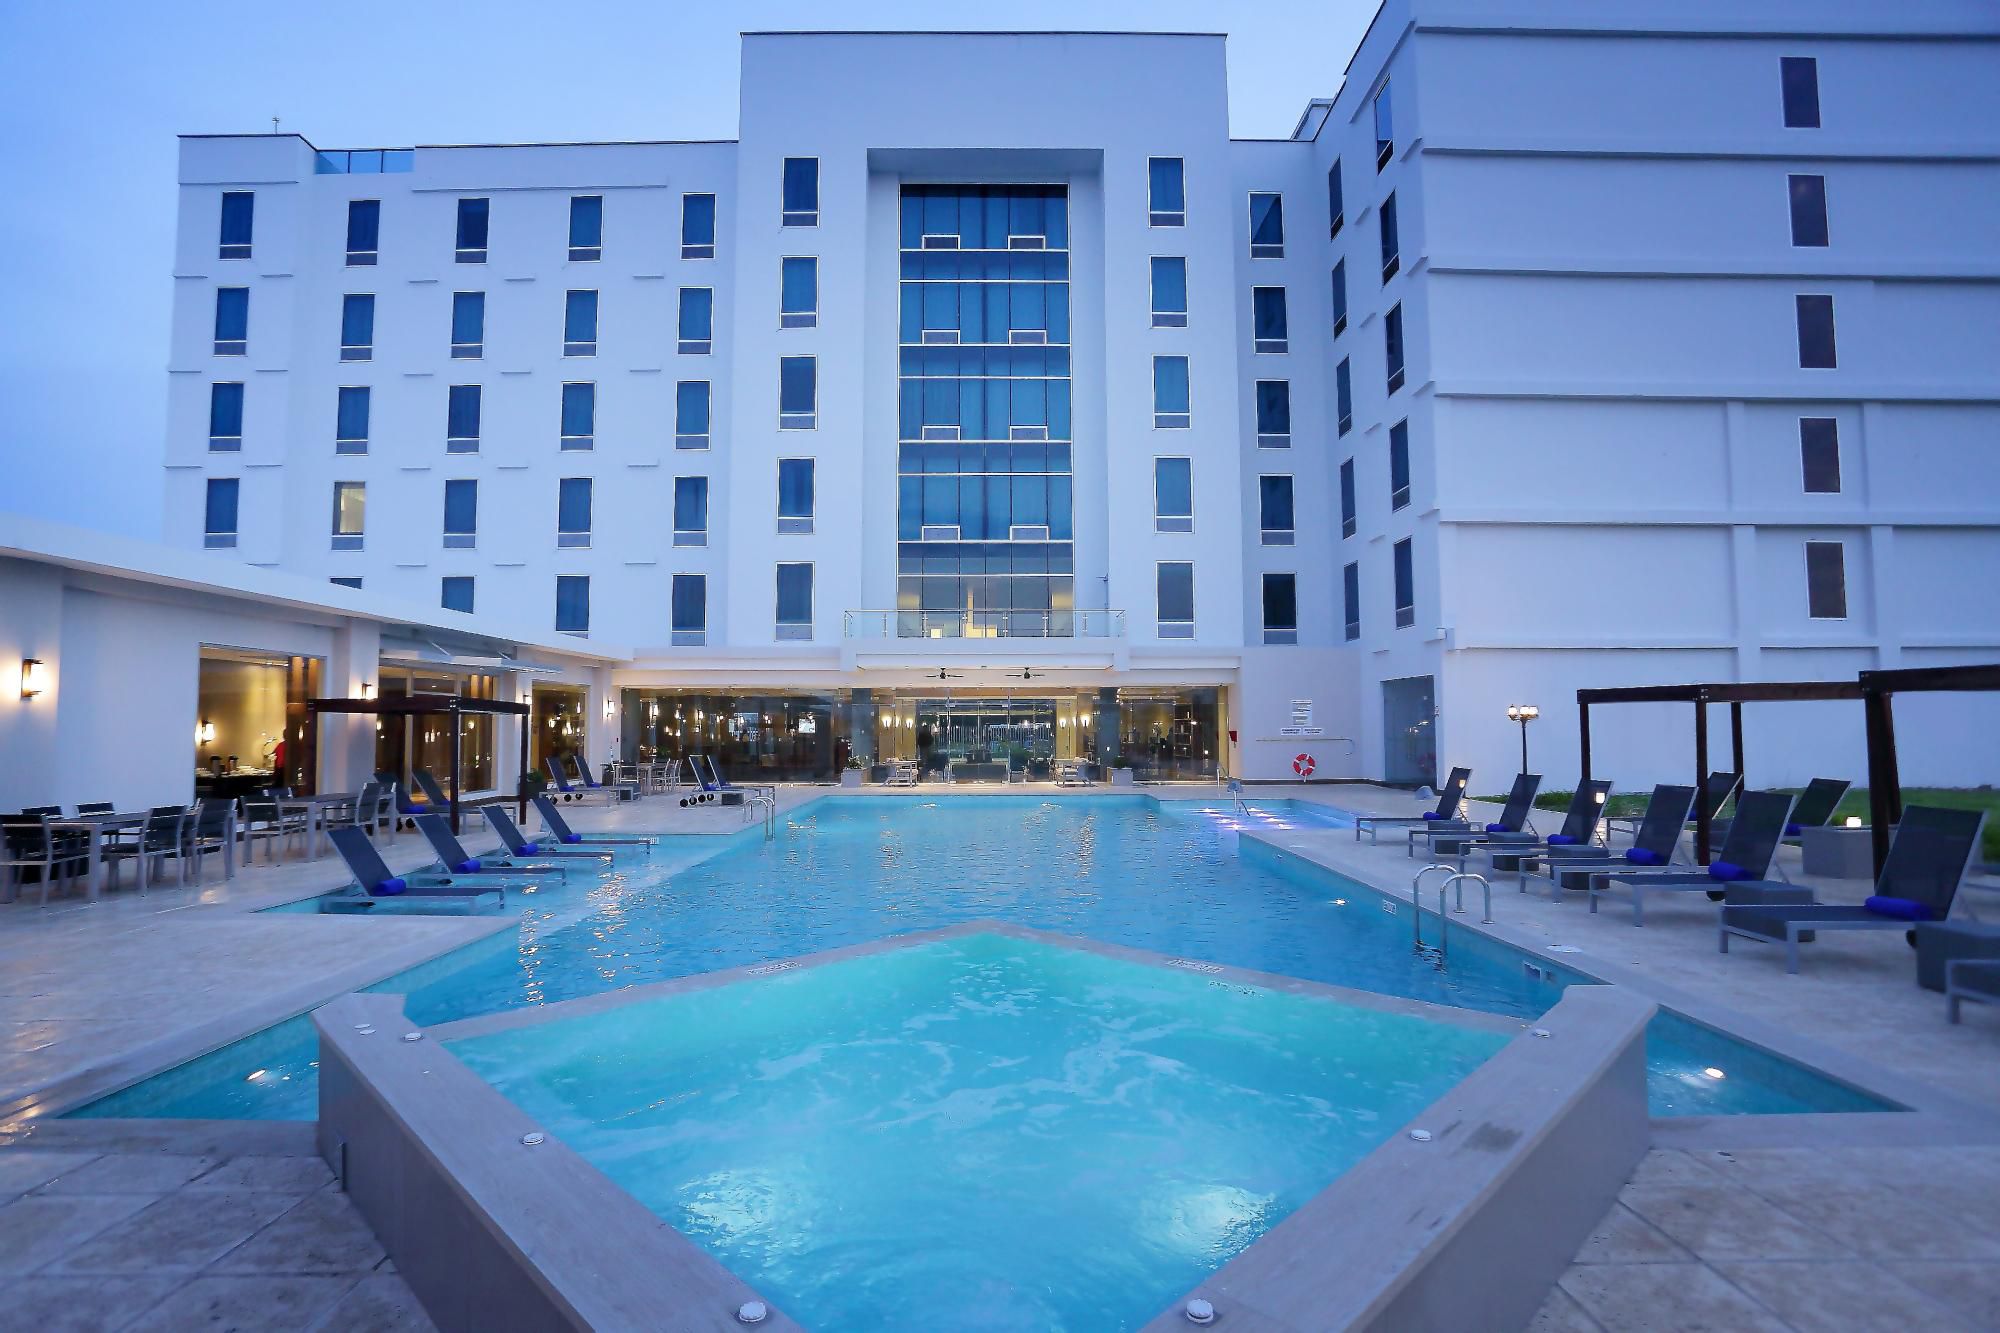 Swimming Pool at Airport Hotel Panama Crowne Plaza